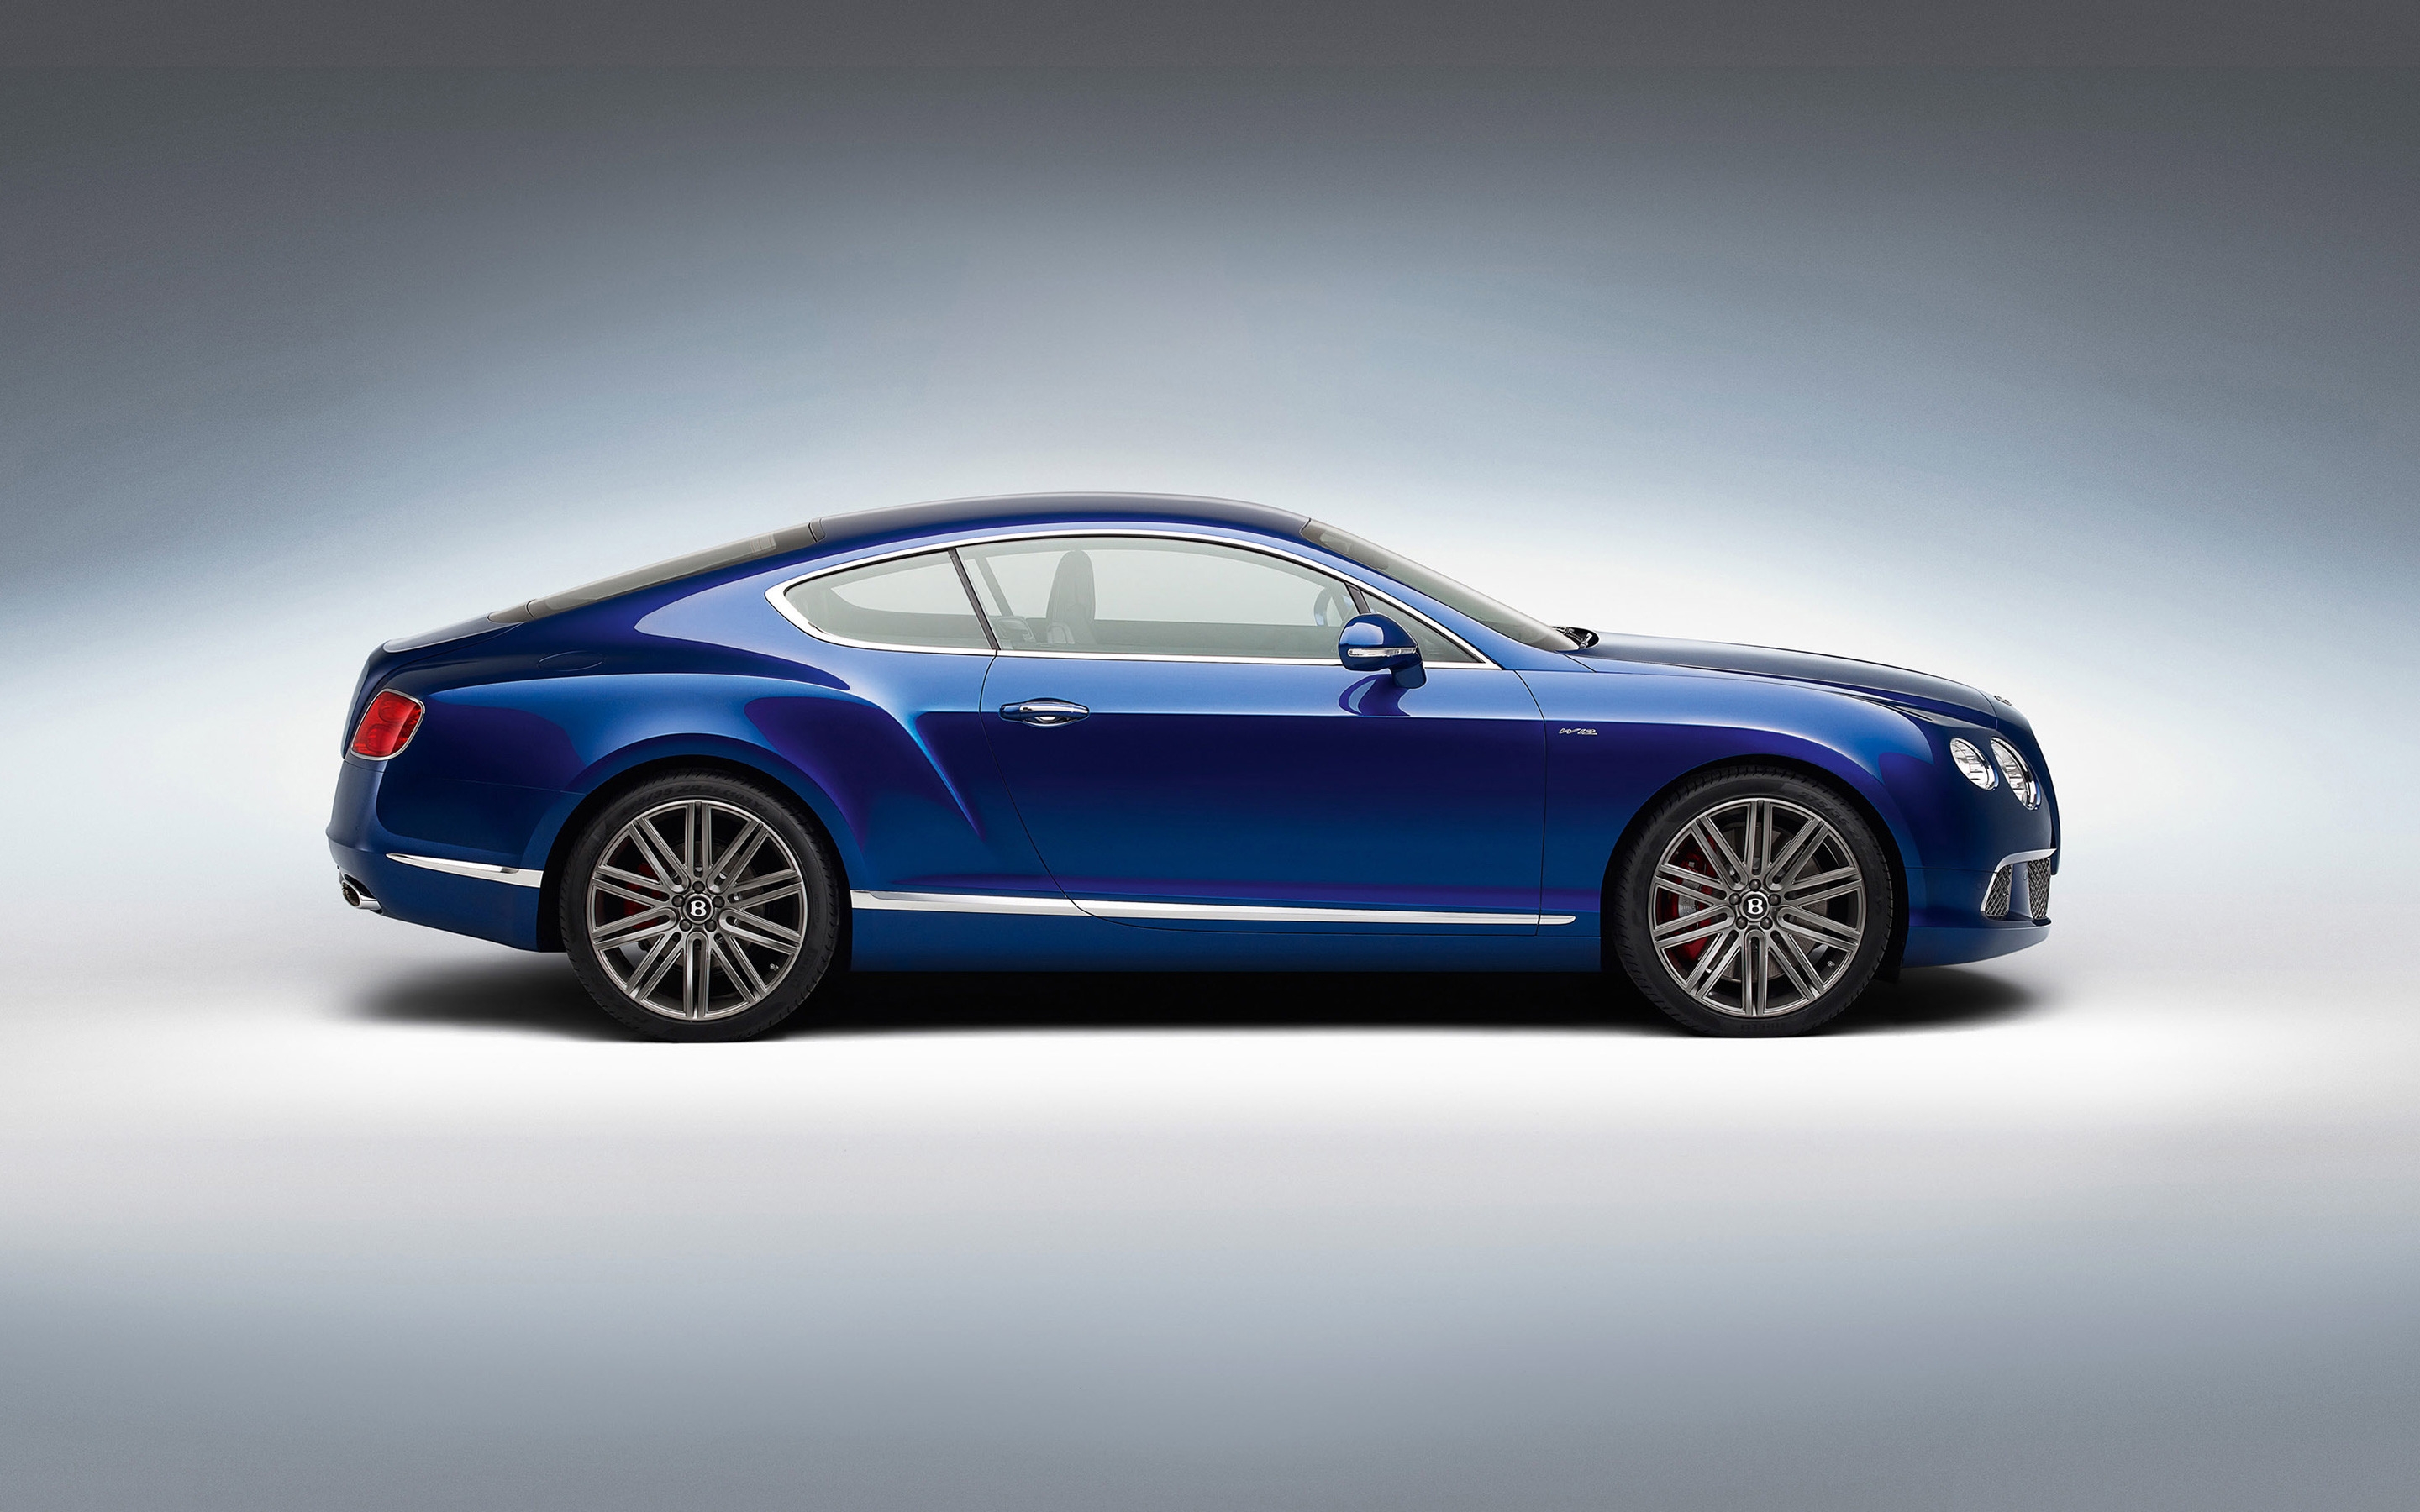 Blue Bentley GT Studio for 2880 x 1800 Retina Display resolution